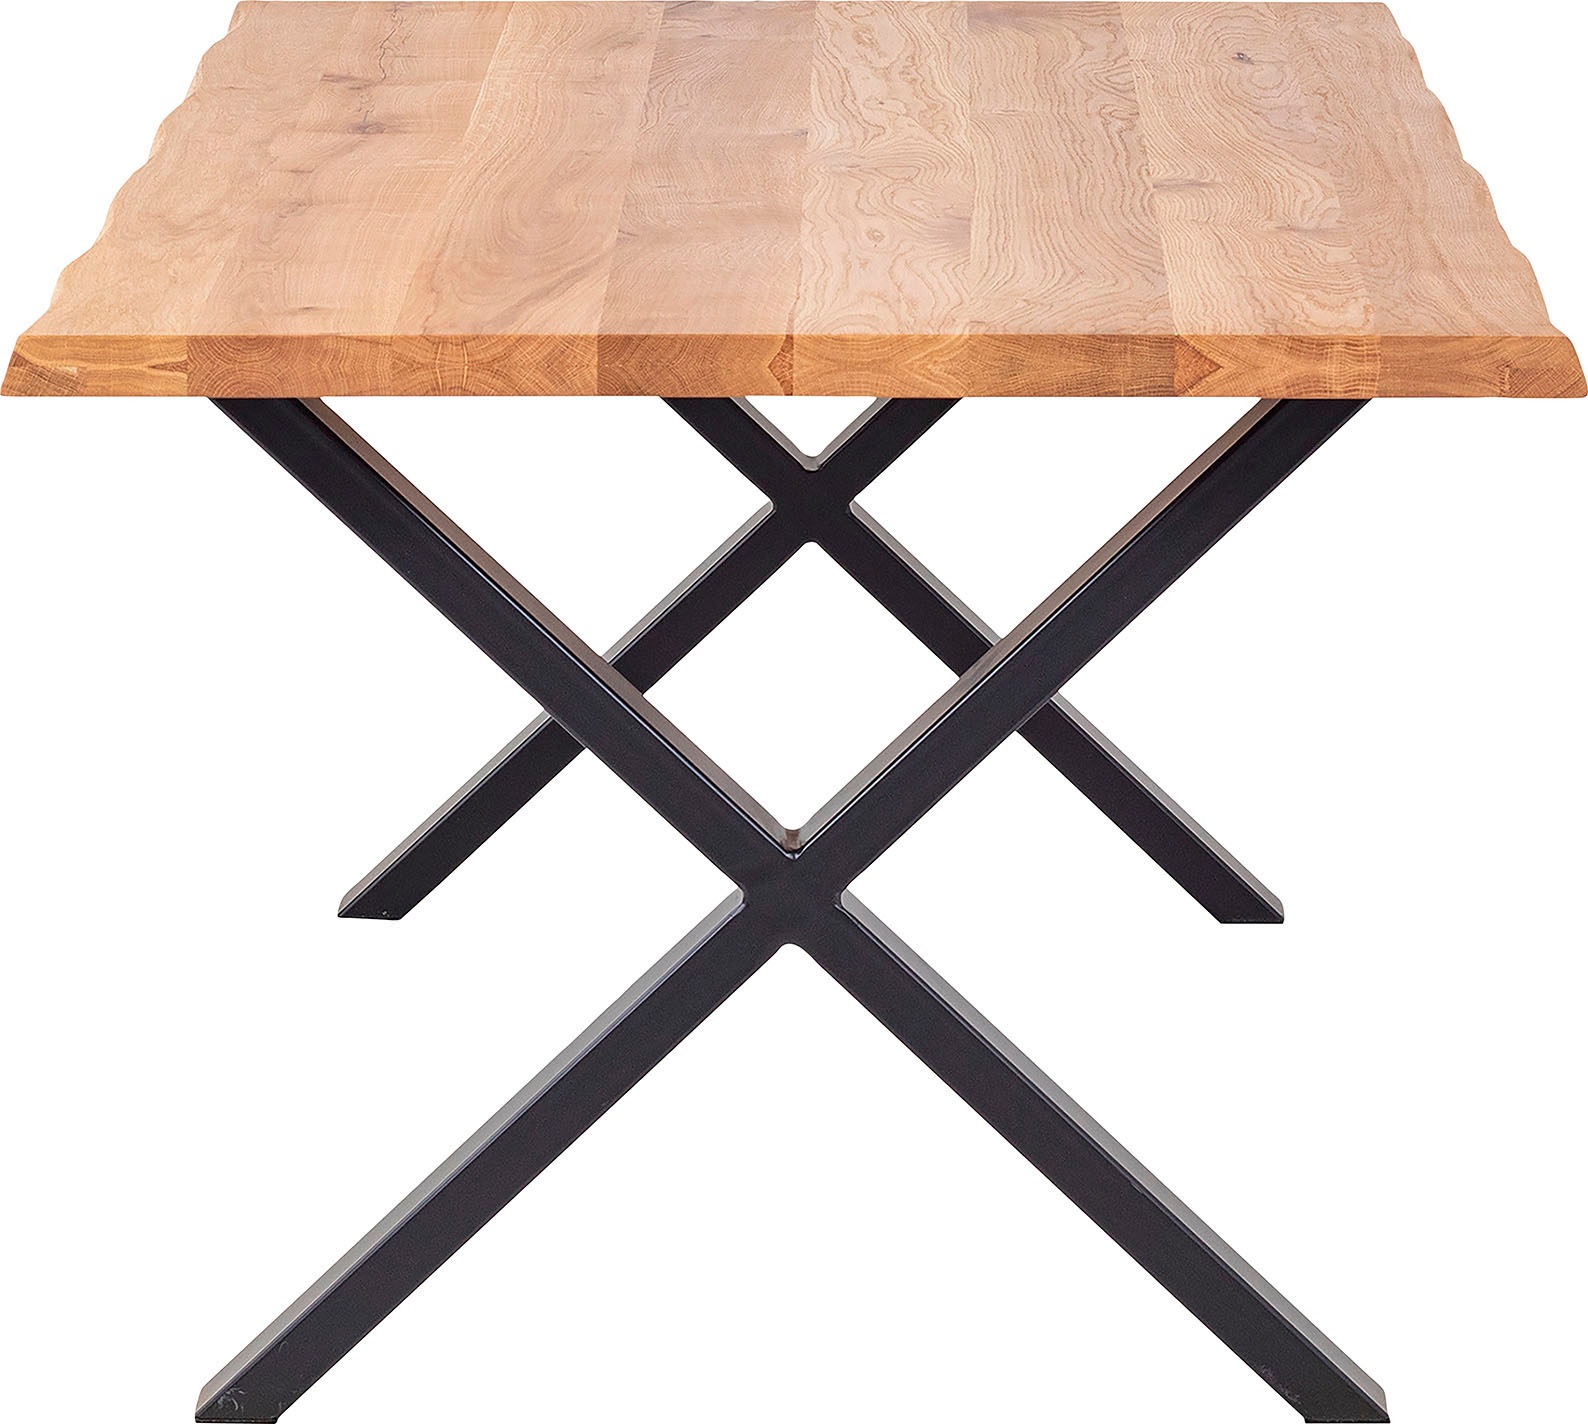 Homexperts Baumkantentisch »Lesley«, Breite 160 oder 200 cm, mit natürlich verlaufender Baumkante